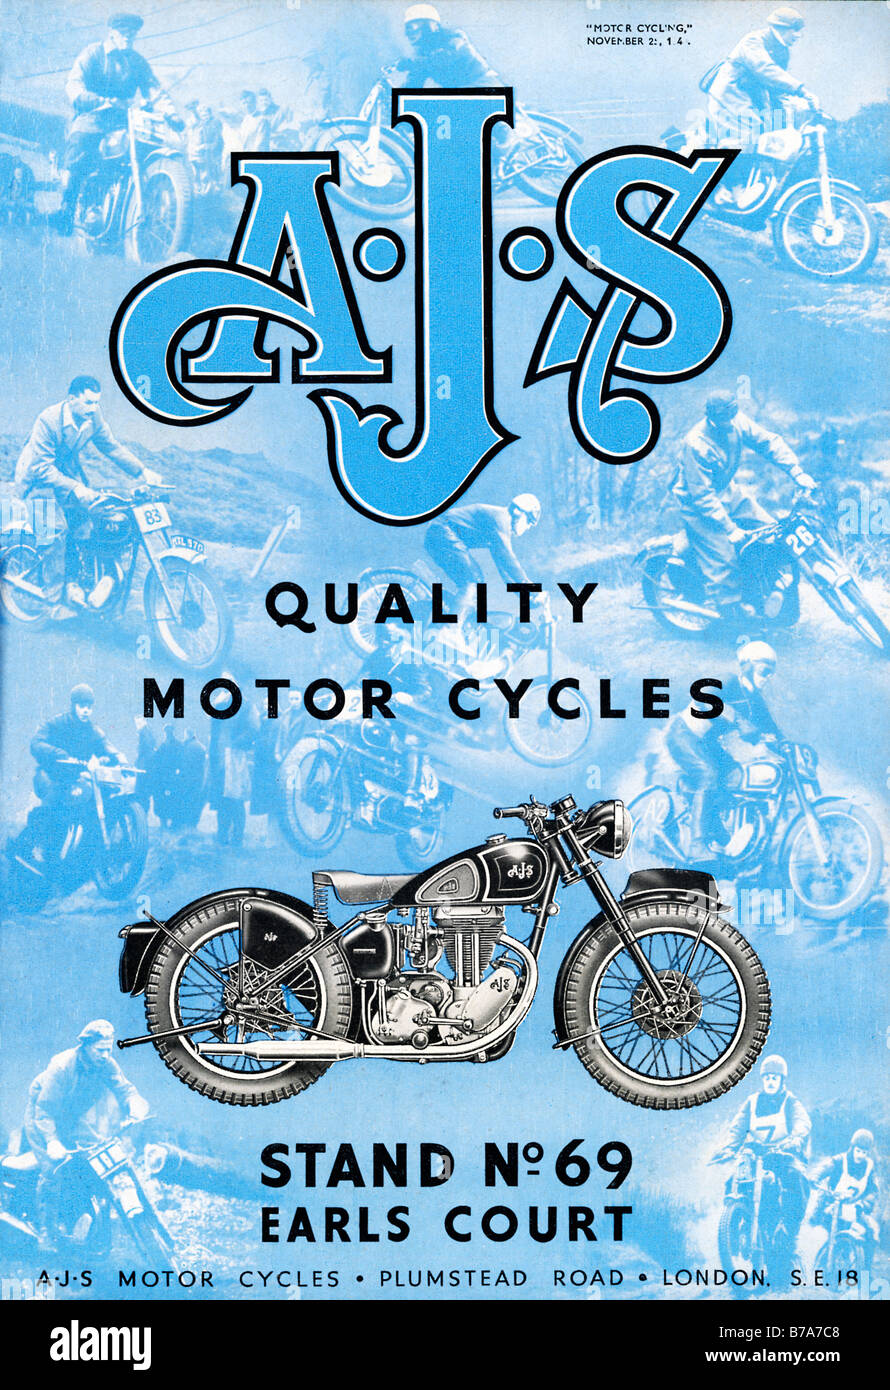 AJS cicli motore 1948 annuncio pubblicitario per i nuovi modelli dalla British Motor Cycle produttore basato nel sud est di Londra Foto Stock